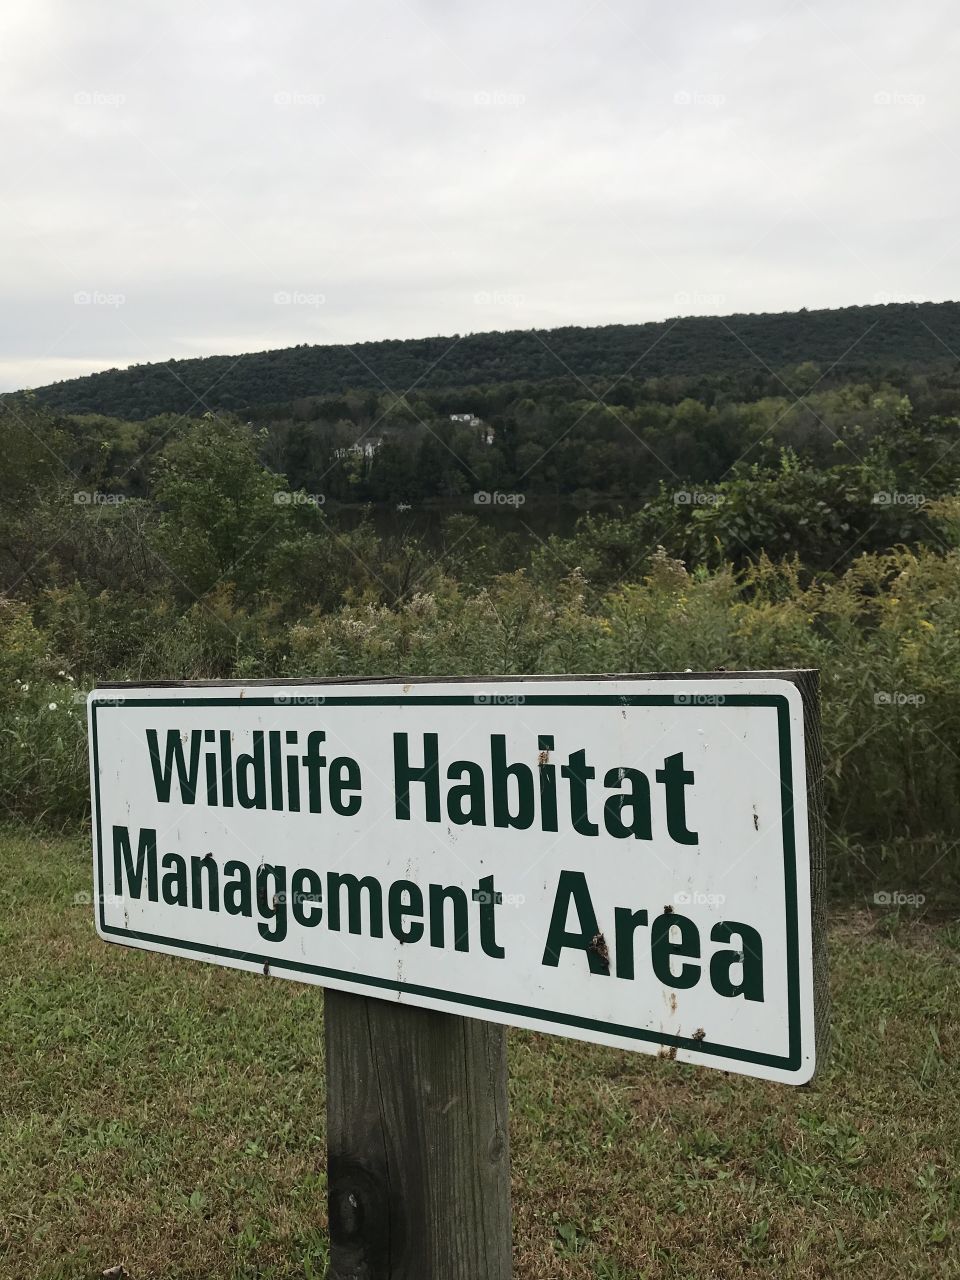 Wildlife Habitat Management Area